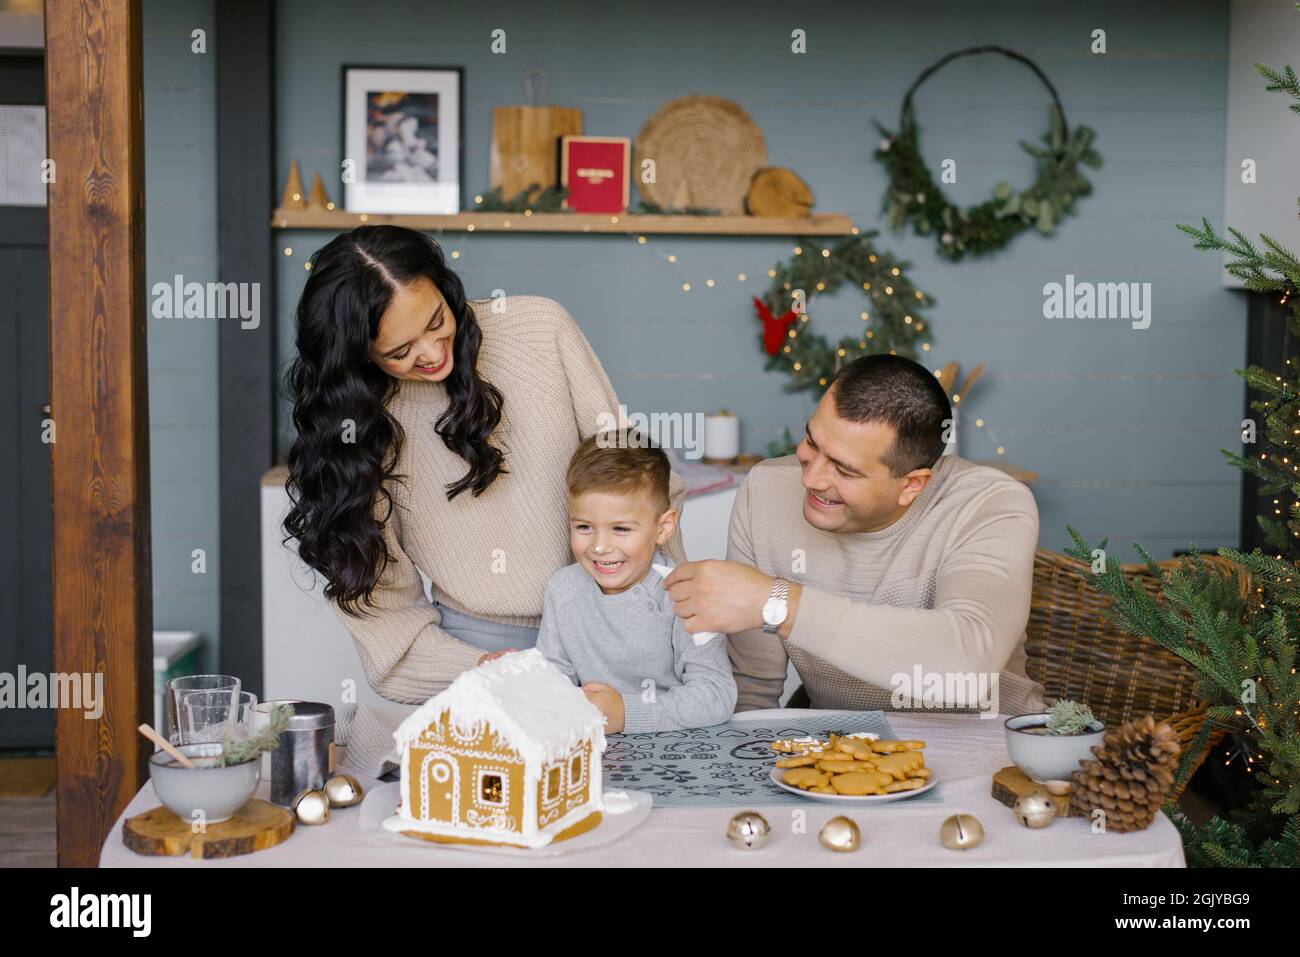 Die Familie backt zu Weihnachten ein Lebkuchenhaus mit Süßigkeiten, der Vater legt seinem Sohn das Sahnehäubchen auf die Nase, sie lachen Stockfoto